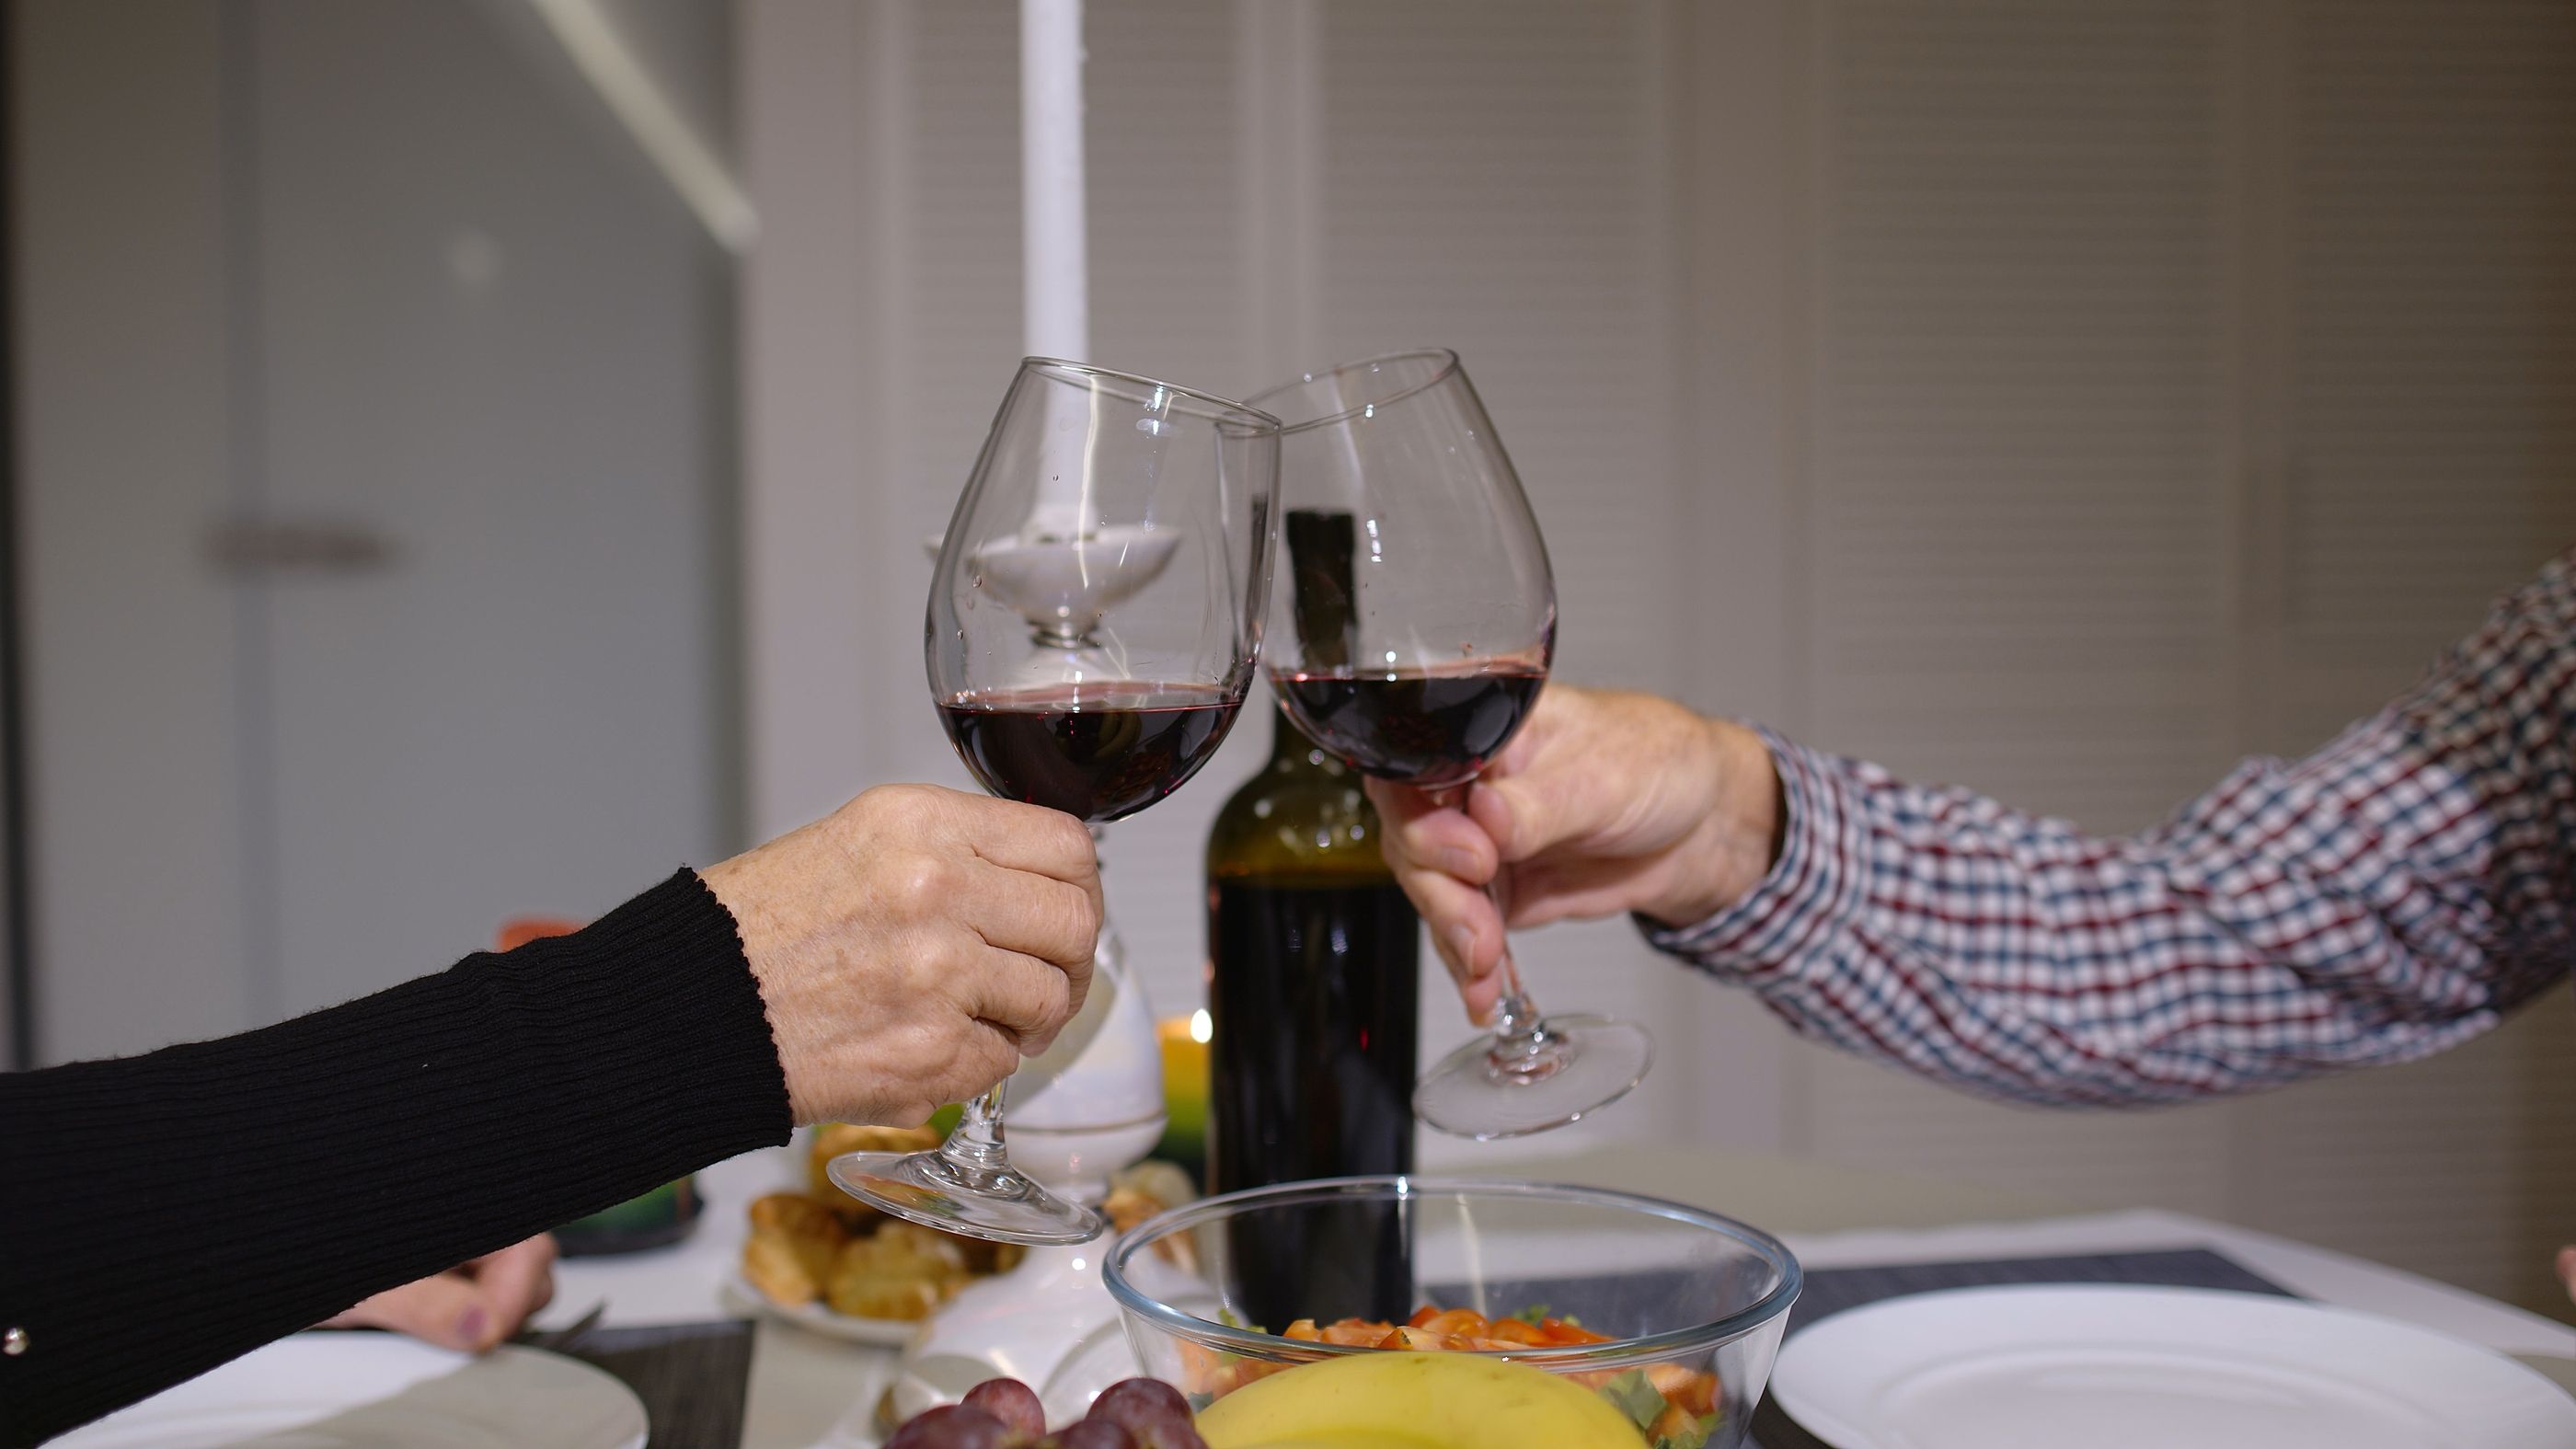 VÍDEO: Invita a sus abuelos a cenar por sorpresa y esta es su reacción viral (Bigstock)